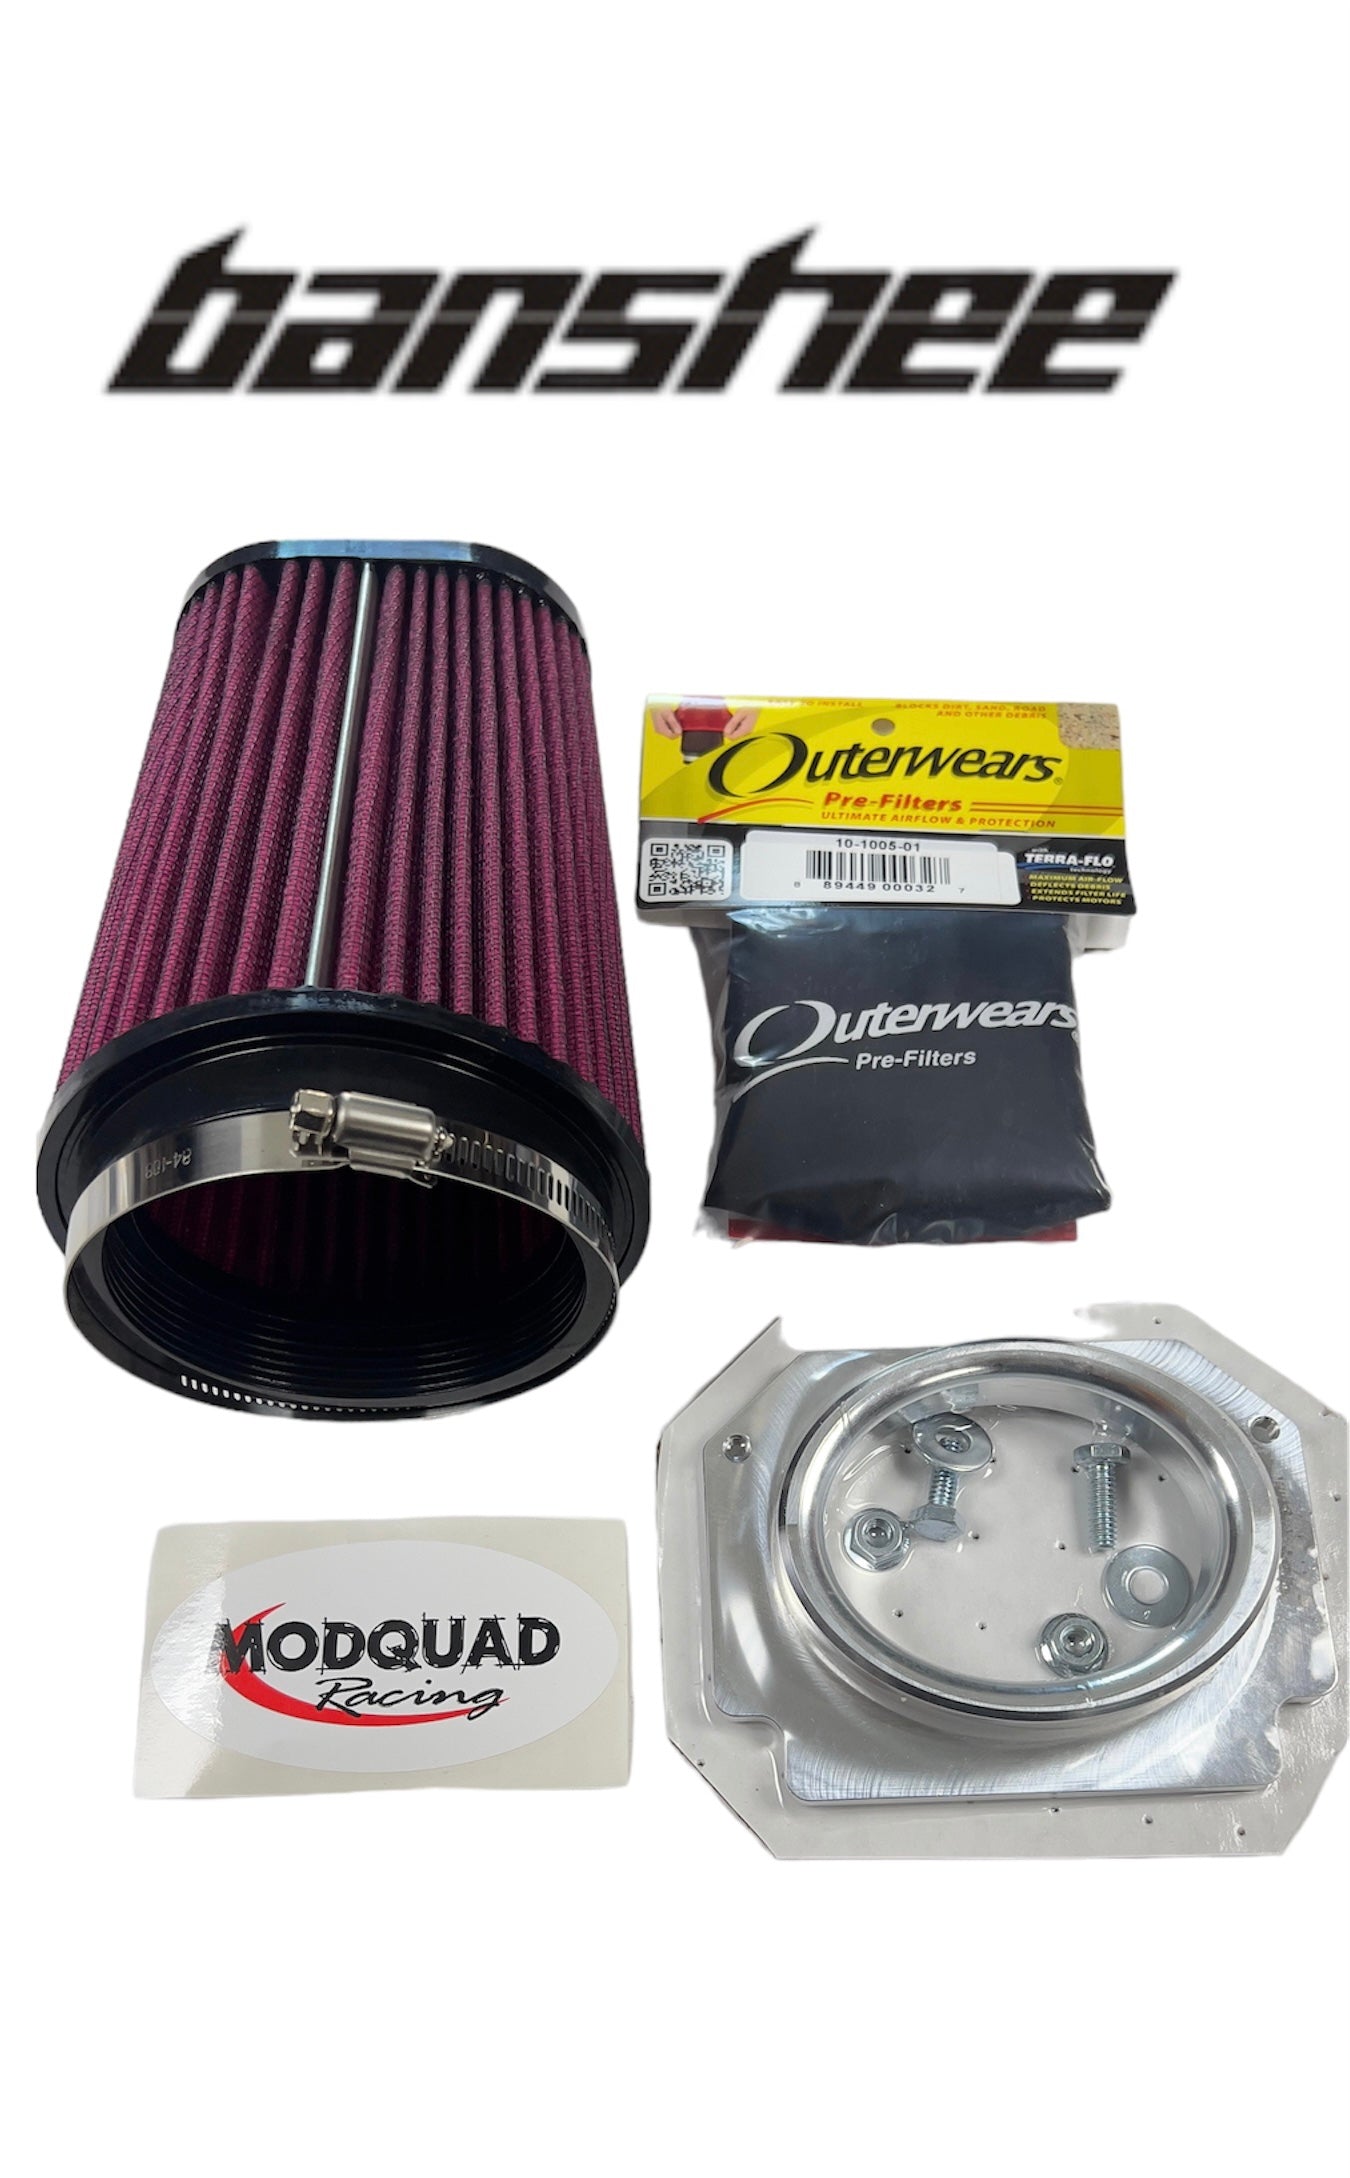 Banshee modquad air filter kit